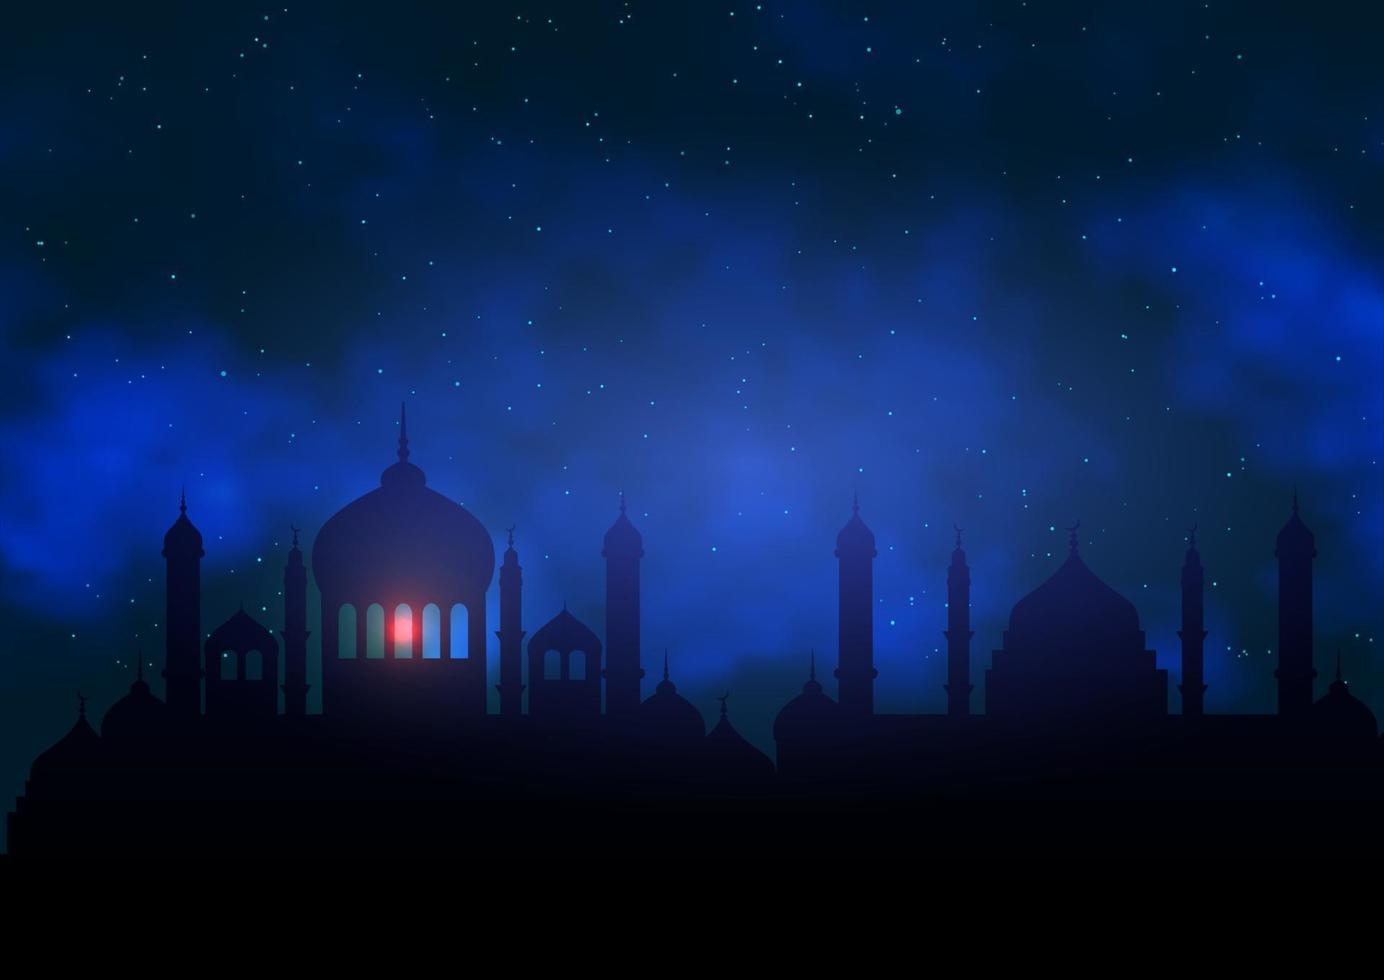 fond de ramadan kareem avec la silhouette de la mosquée contre le ciel nocturne vecteur